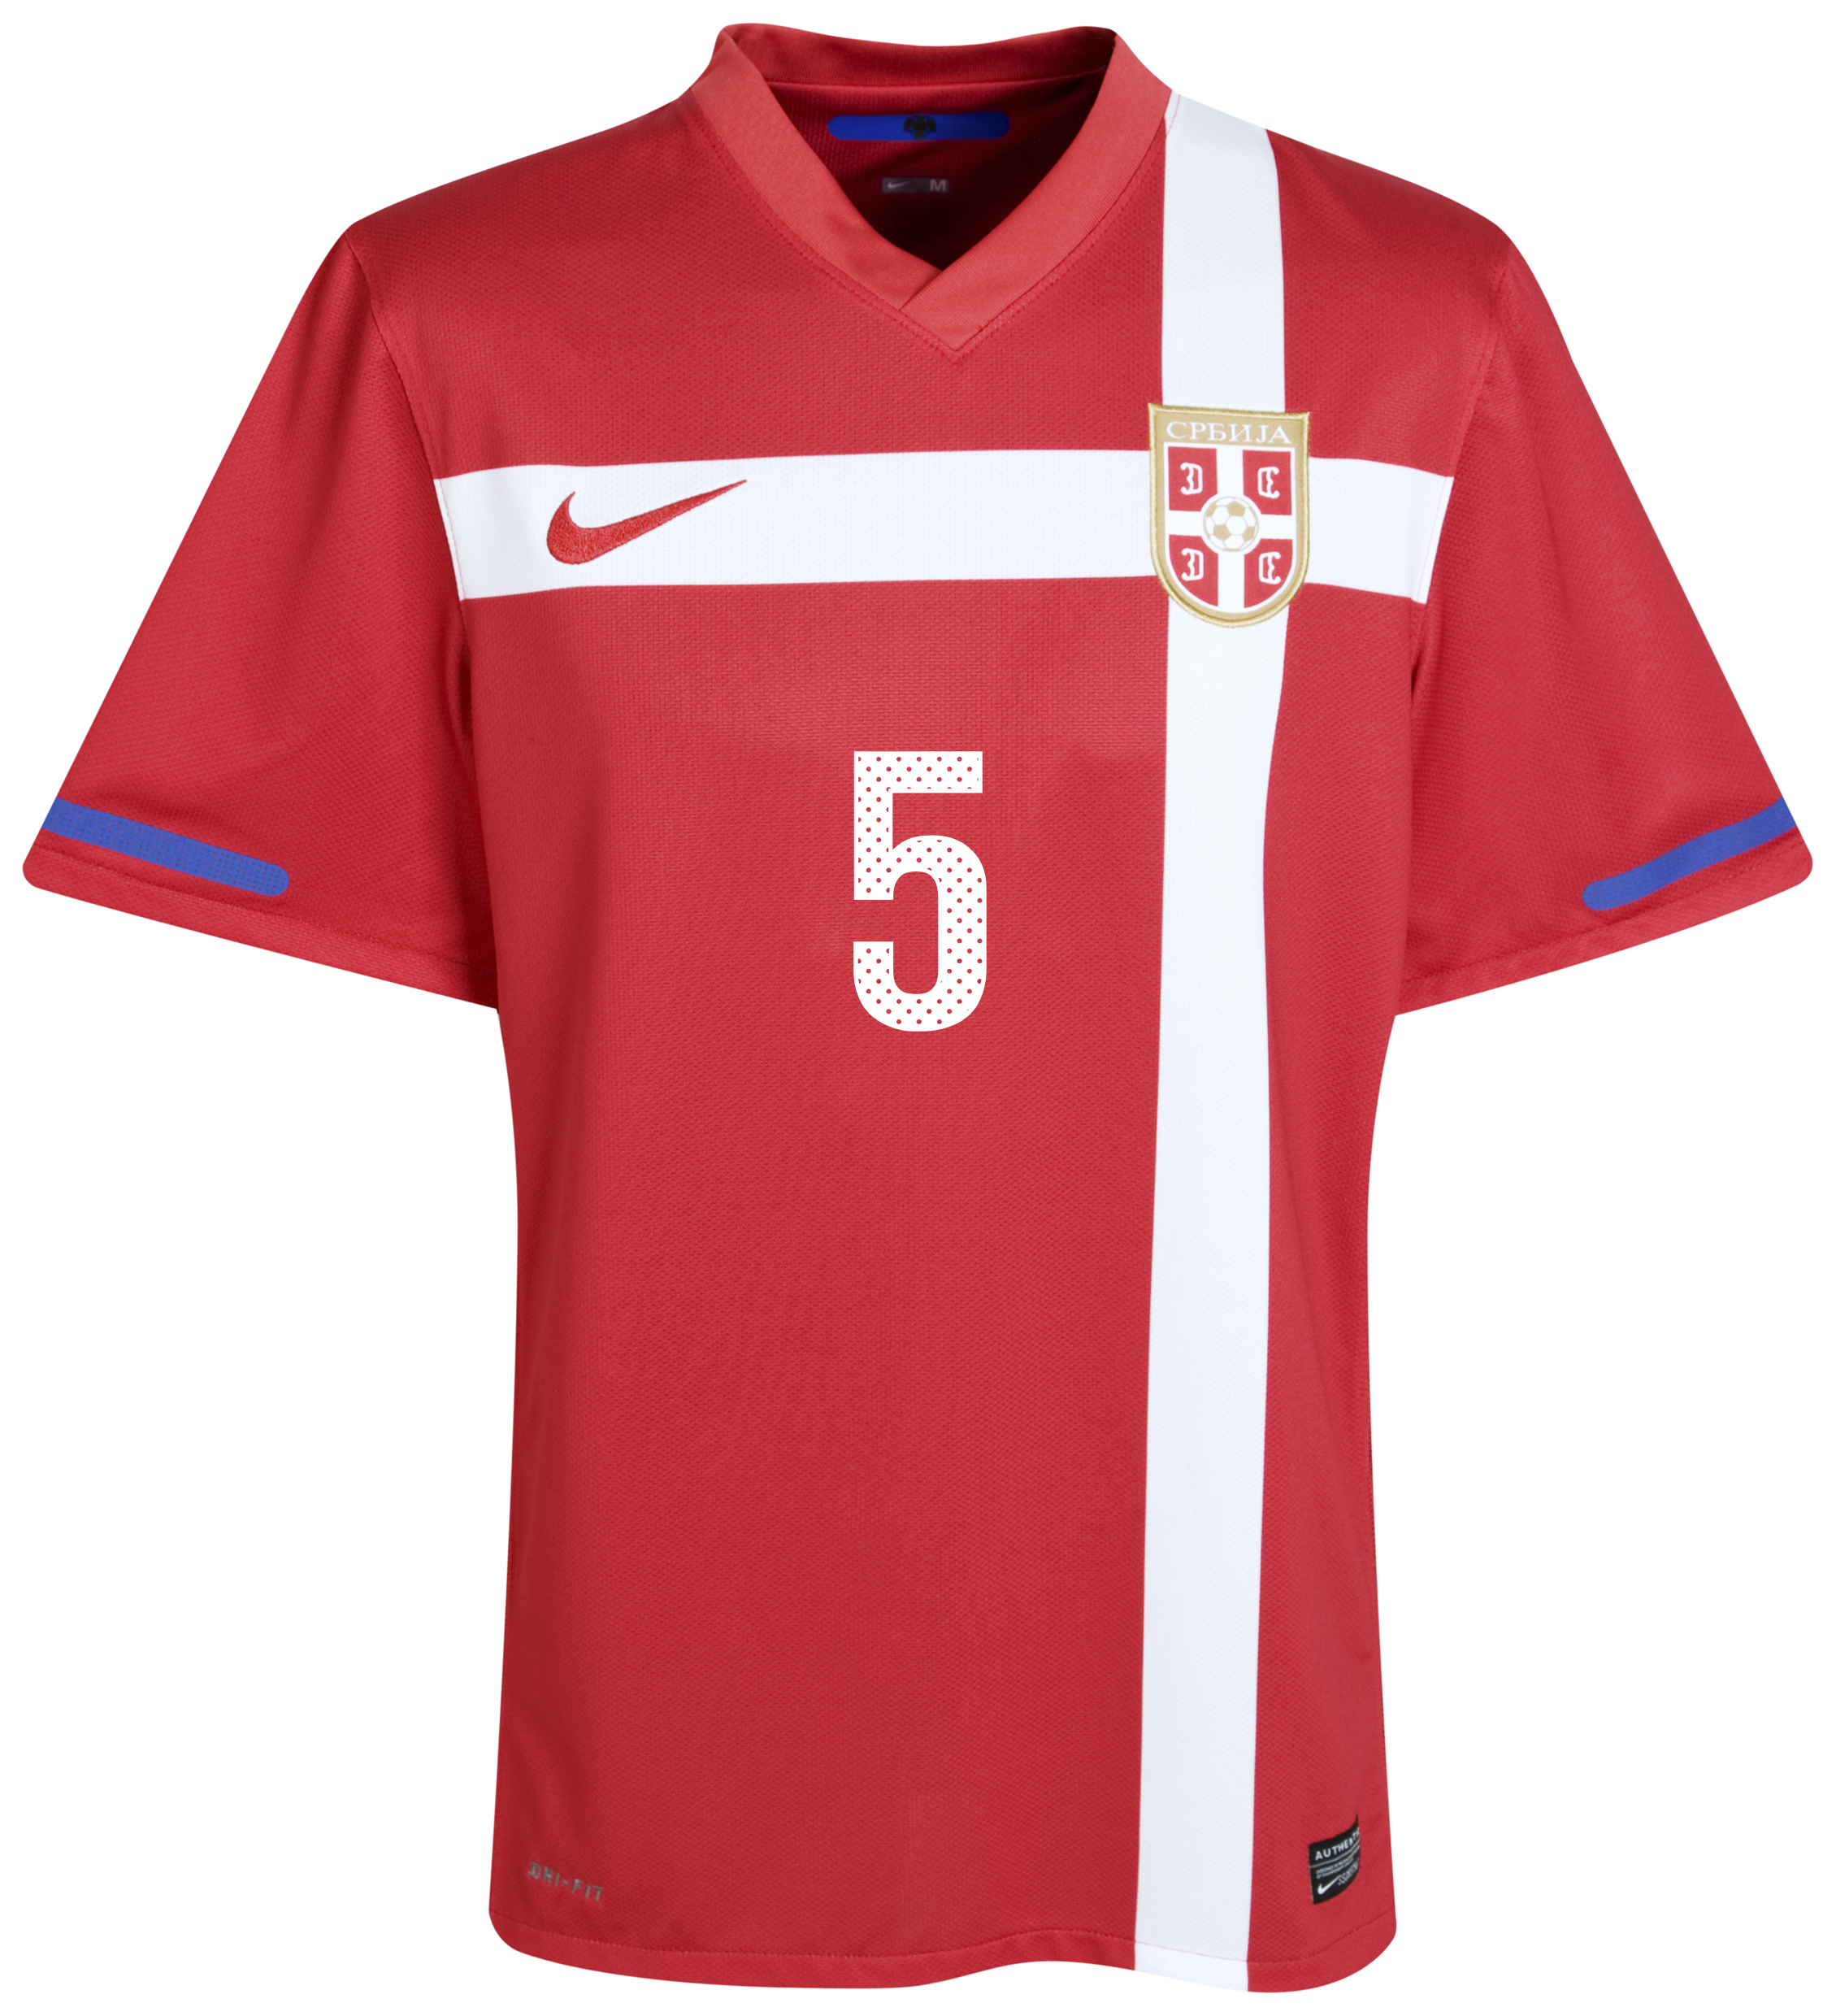 الملابس النهائيه لكأس العالم (2010)..... Kb-71658a